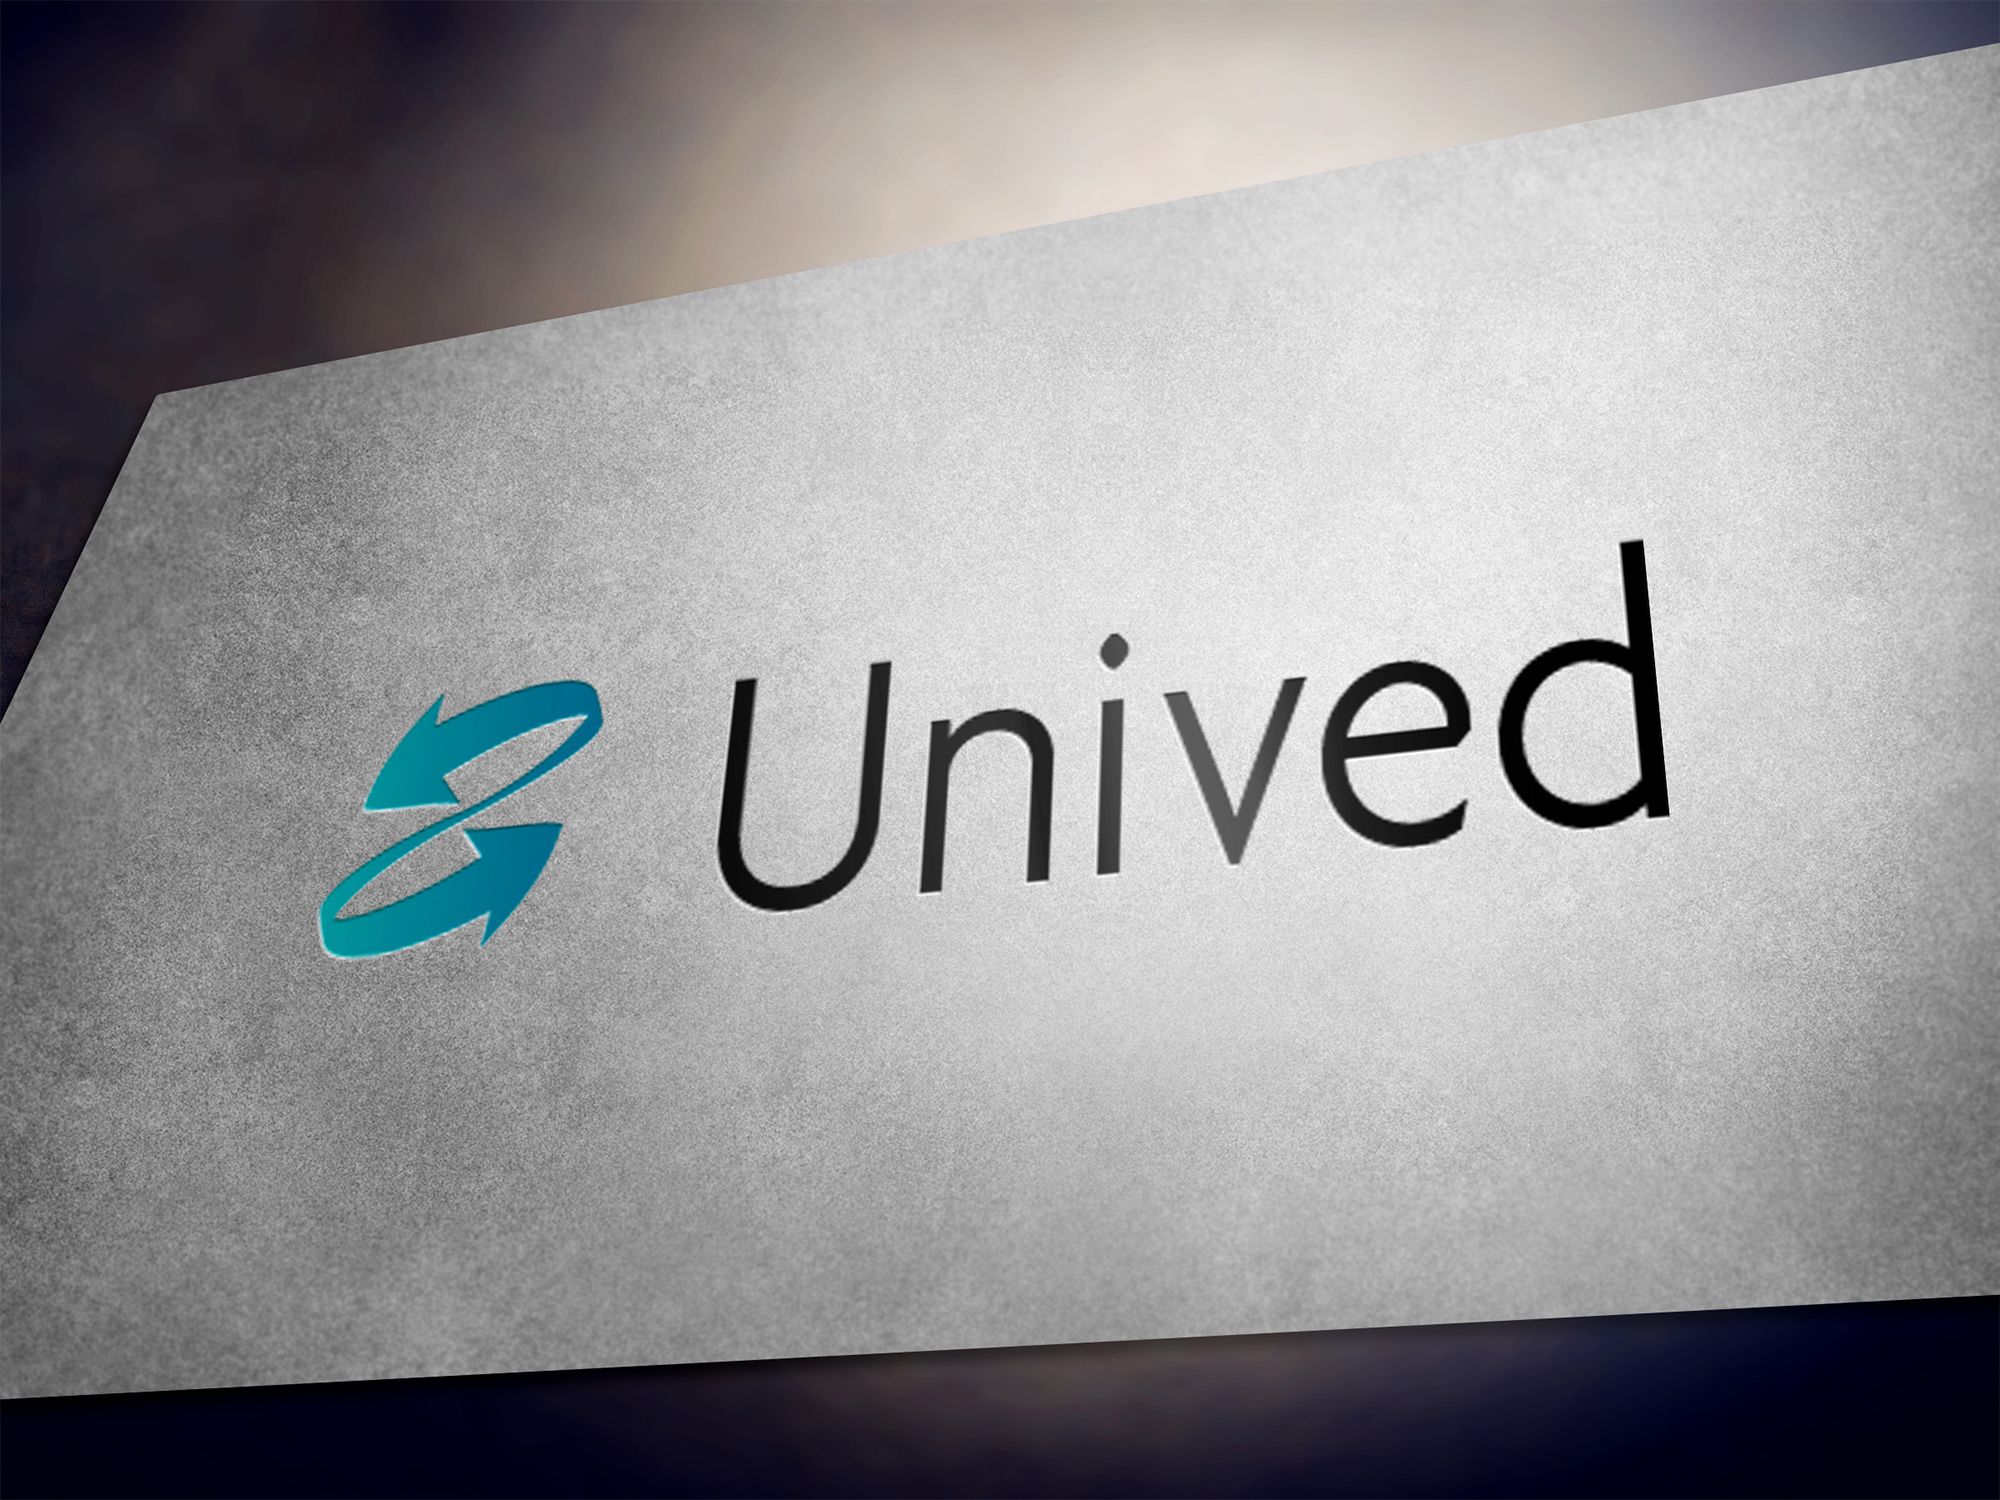 Логотип для логистической компании Unived - дизайнер pups42